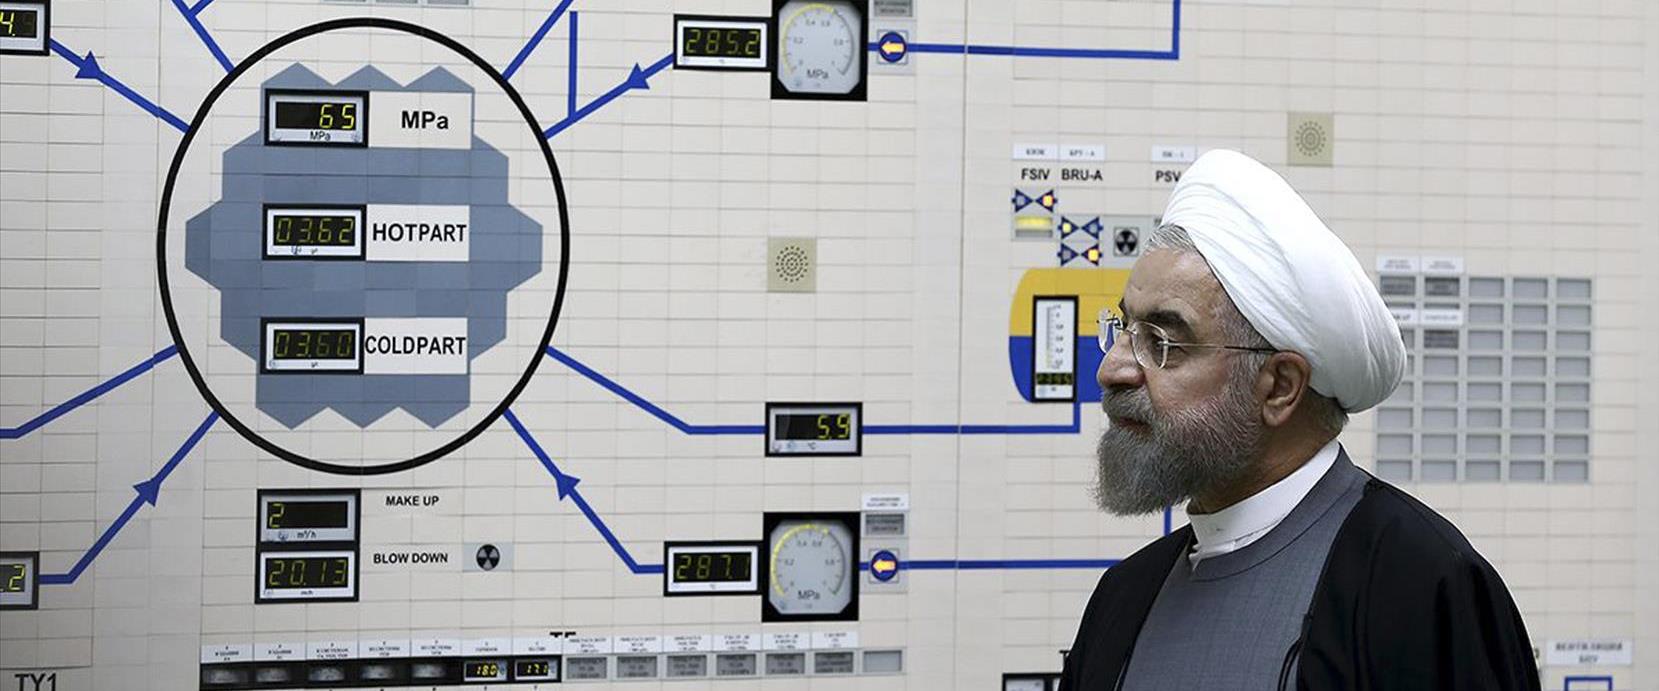 נשיא איראן רוחאני במתקן הגרעיני בבושהר, 2015